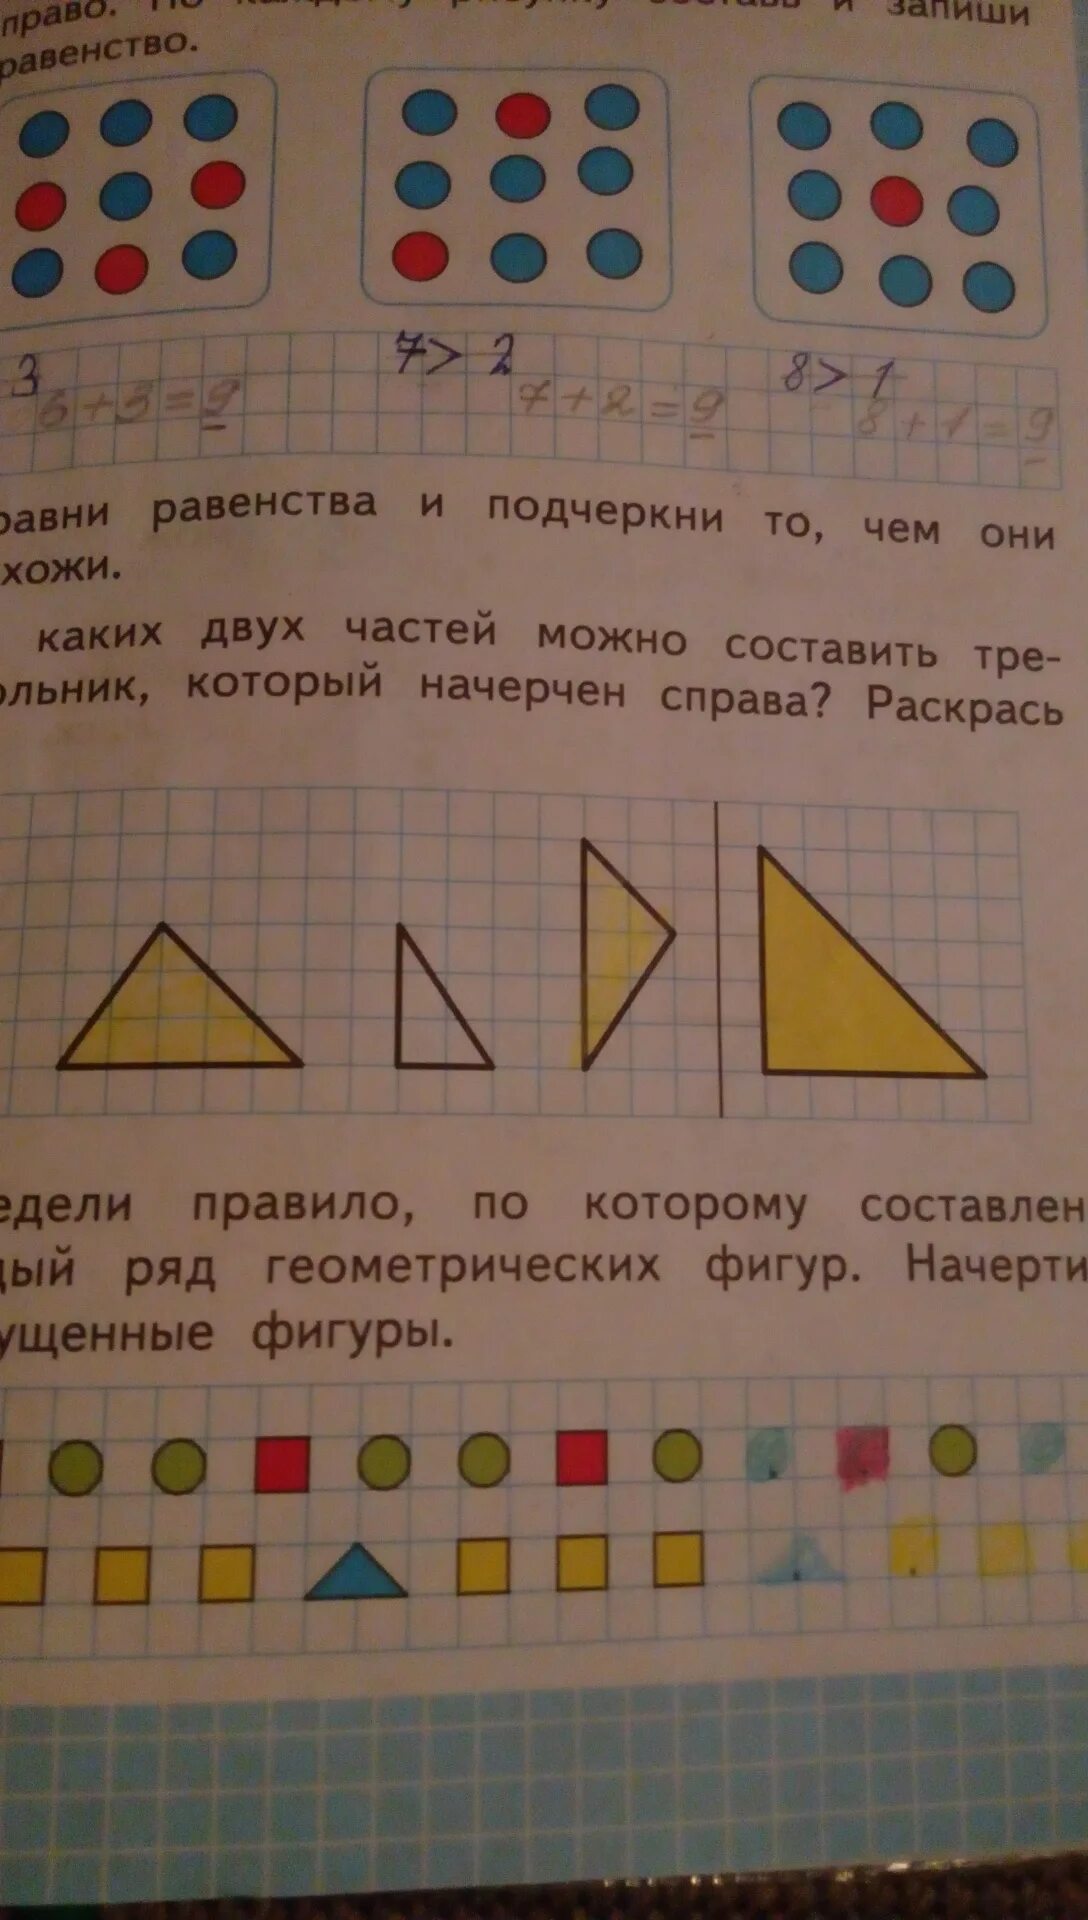 Рабочая тетрадь 1 класс с 46. Из каких двух частей можно составить треугольник который начерчен. Как составить равенство по рисунку. Как меняются рисунки?. Из каких 2 частей можно составить треугольник 1 класс.